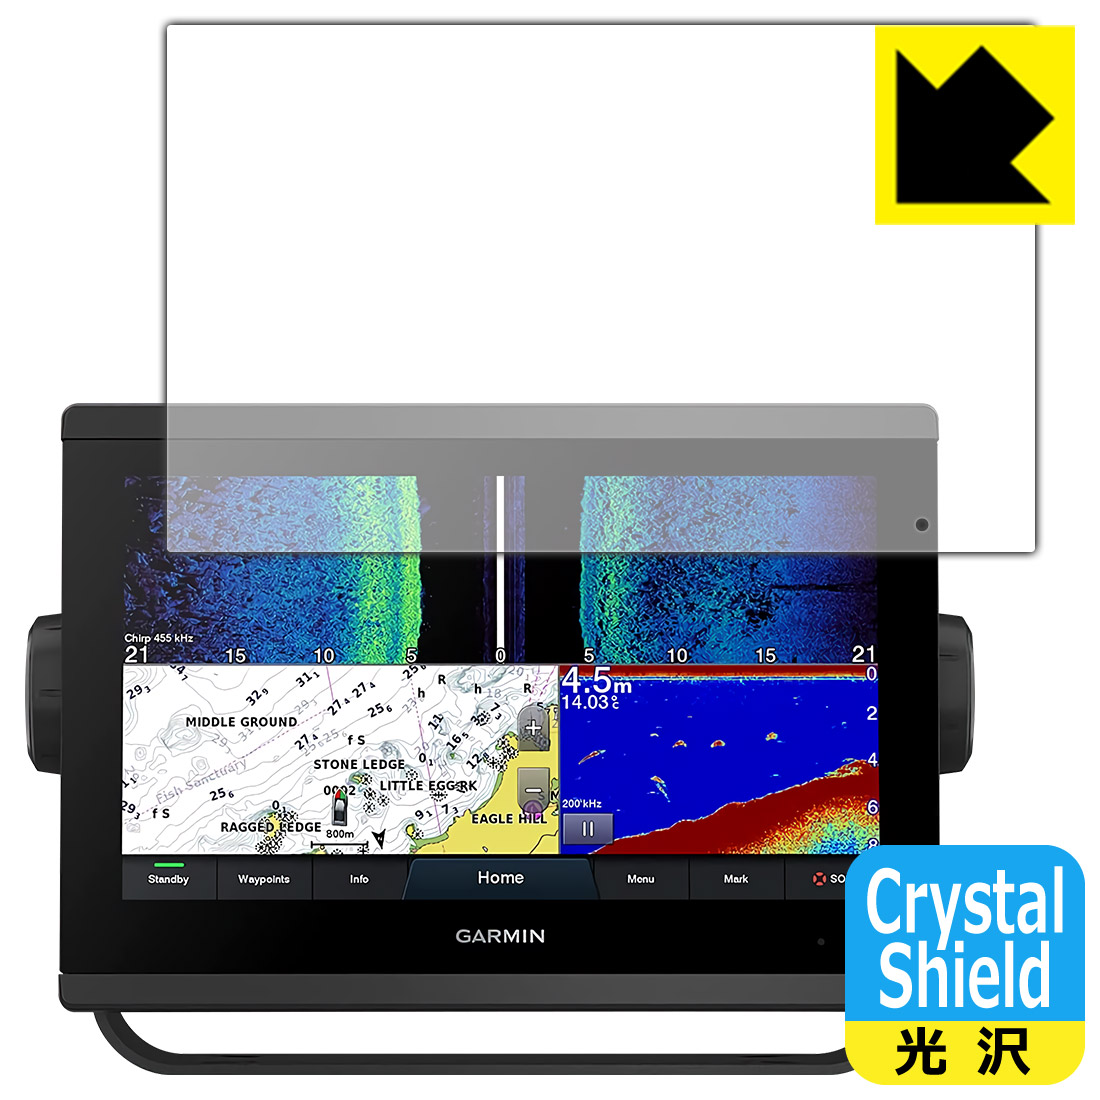 Crystal Shield ガーミン GARMIN GPSMAP 923xsv   923 (3枚セット) 日本製 自社製造直販